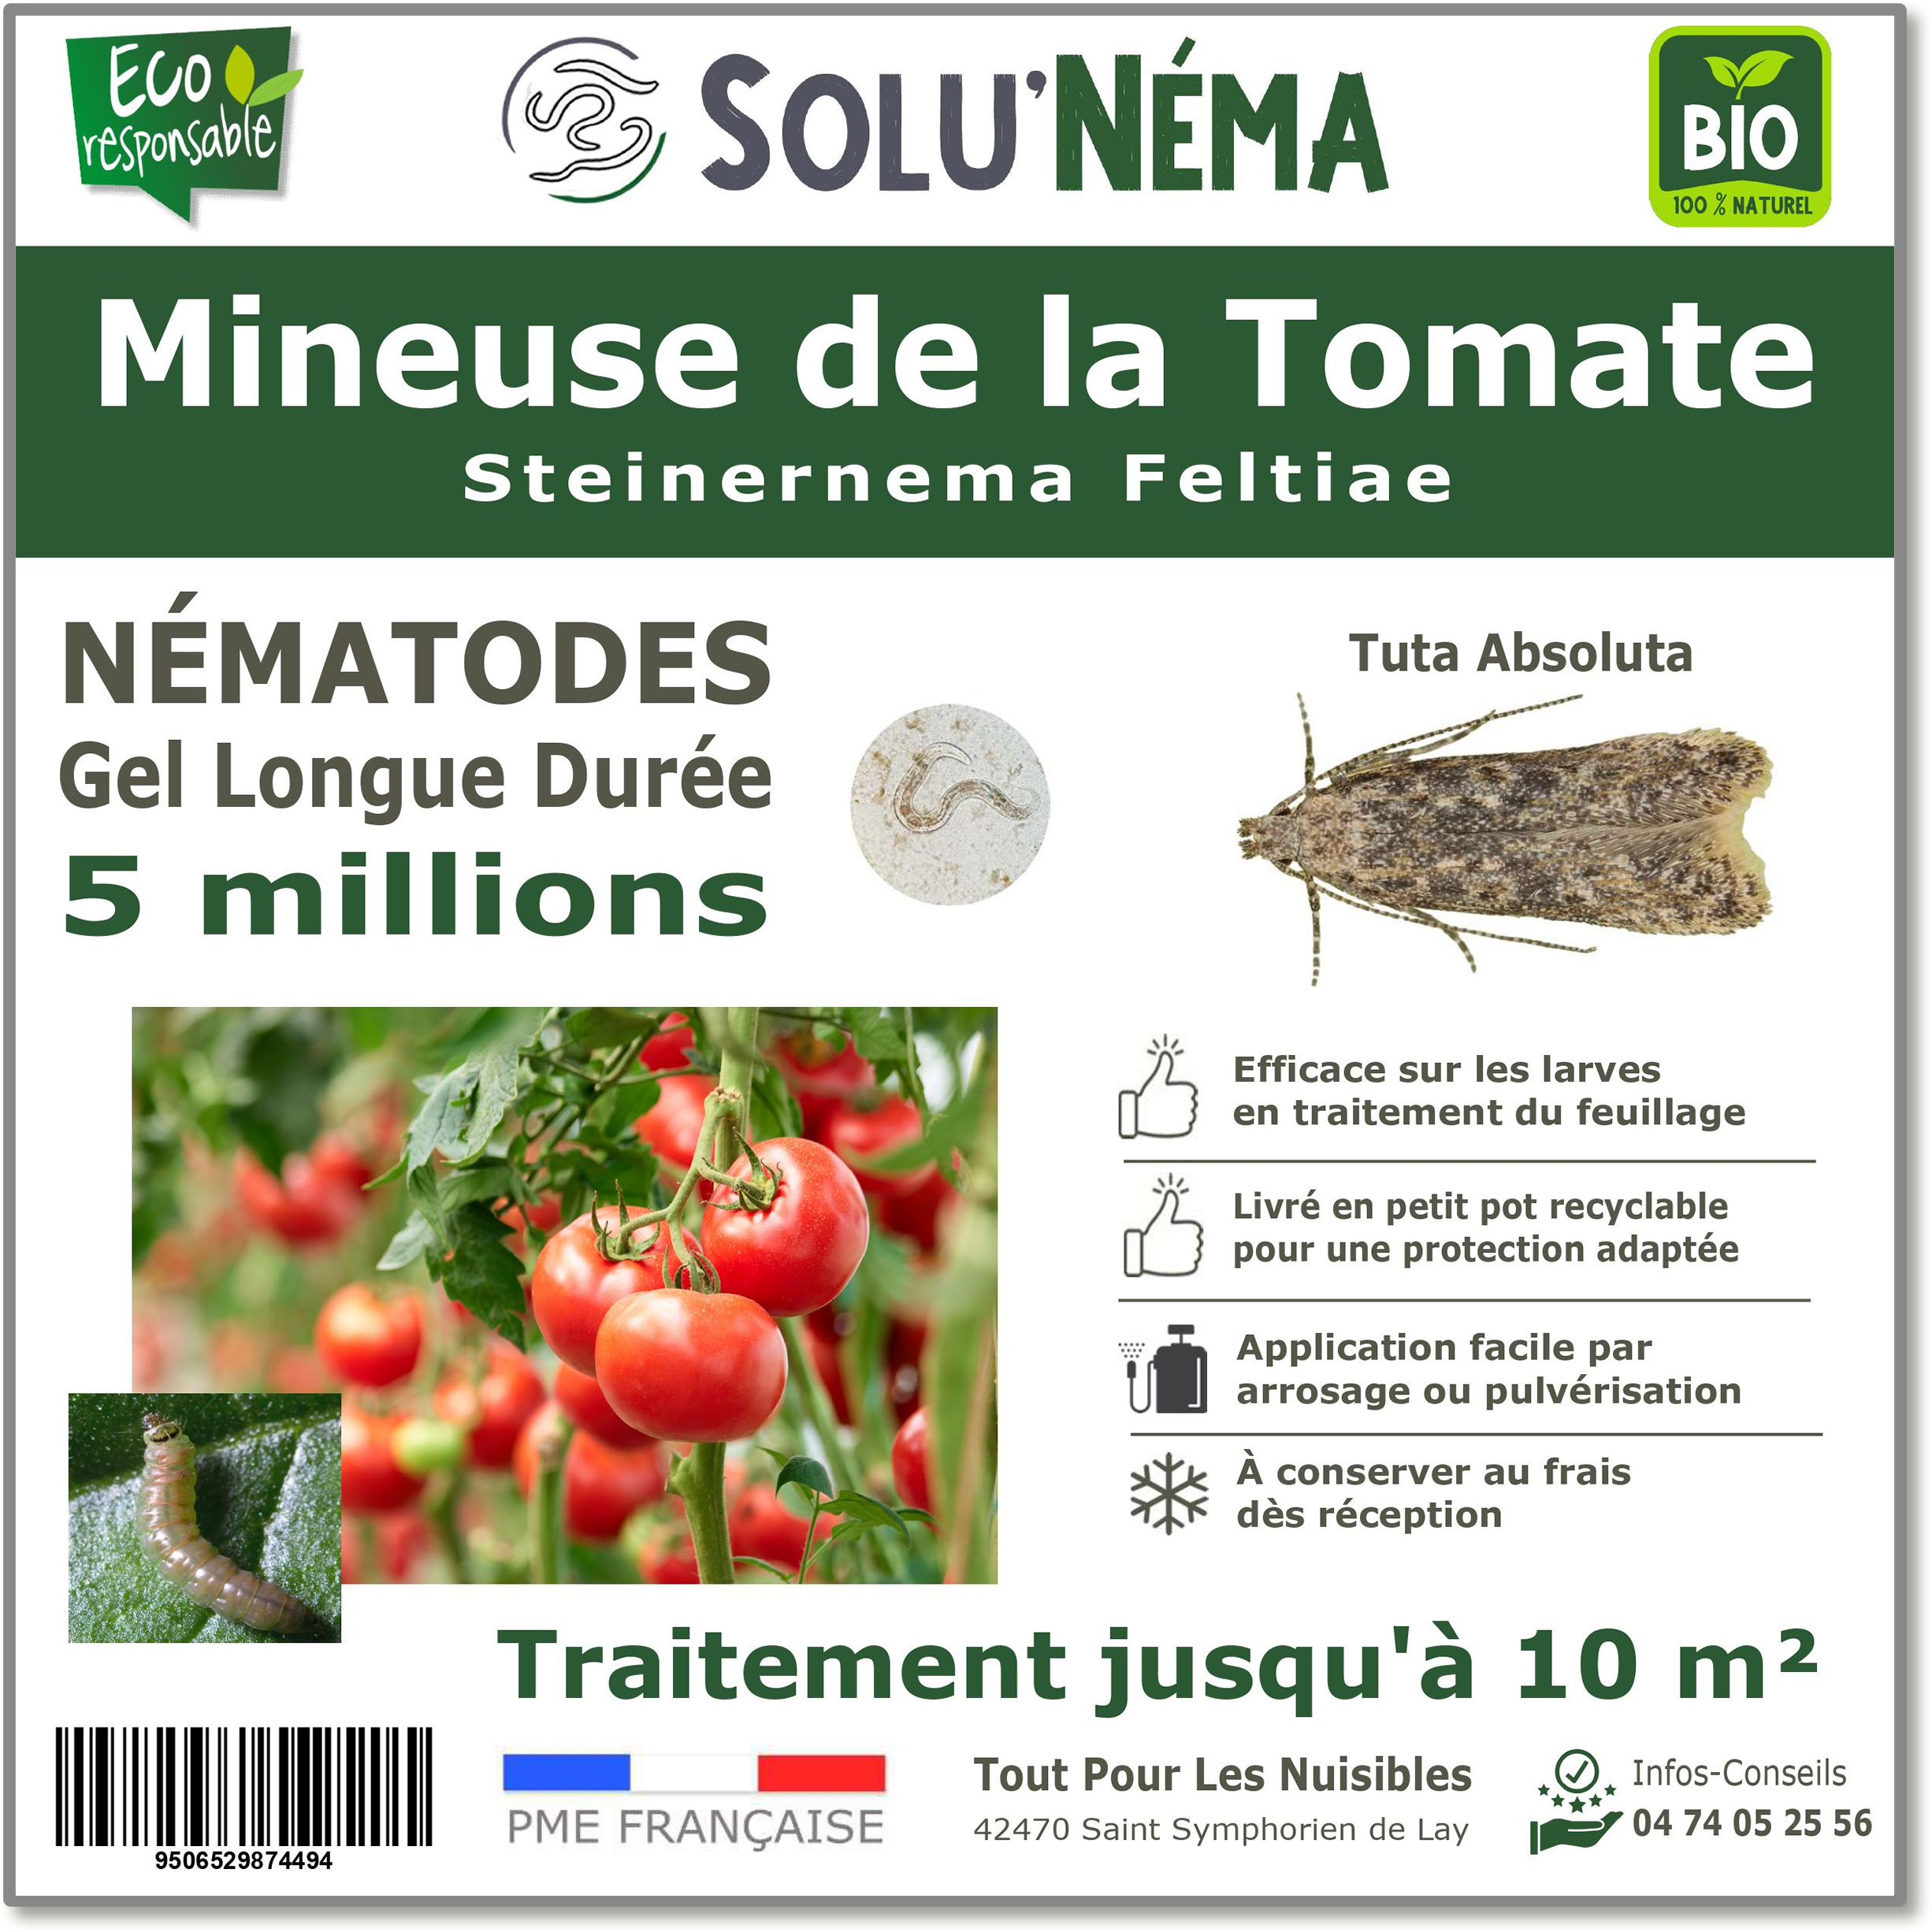 5 Millions de nématodes pour traiter les larves de la mineuse de la tomate